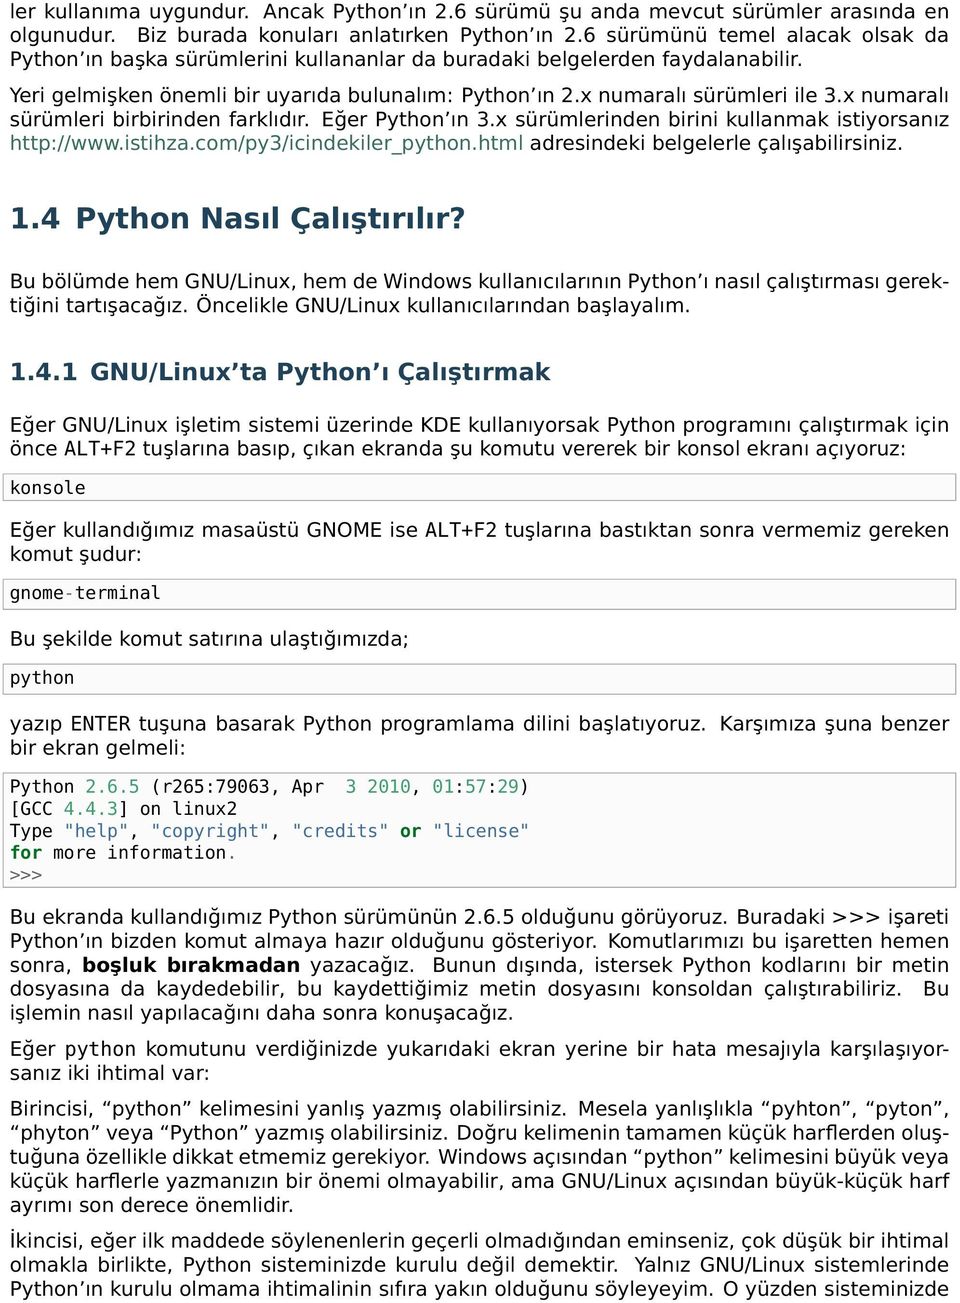 x numaralı sürümleri birbirinden farklıdır. Eğer Python ın 3.x sürümlerinden birini kullanmak istiyorsanız http://www.istihza.com/py3/icindekiler_python.html adresindeki belgelerle çalışabilirsiniz.